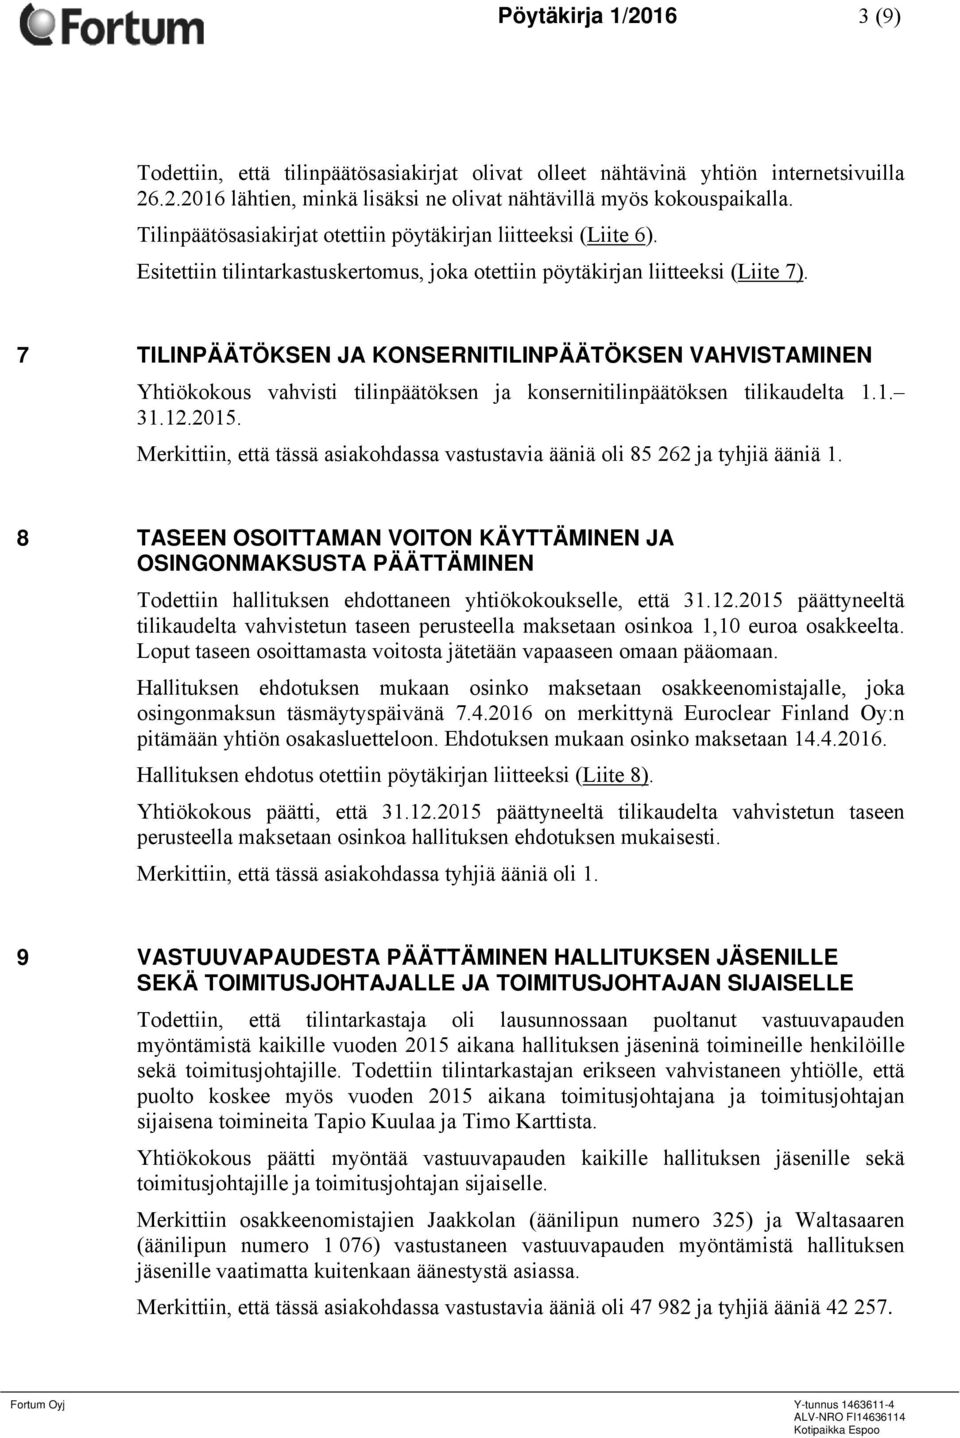 7 TILINPÄÄTÖKSEN JA KONSERNITILINPÄÄTÖKSEN VAHVISTAMINEN Yhtiökokous vahvisti tilinpäätöksen ja konsernitilinpäätöksen tilikaudelta 1.1. 31.12.2015.